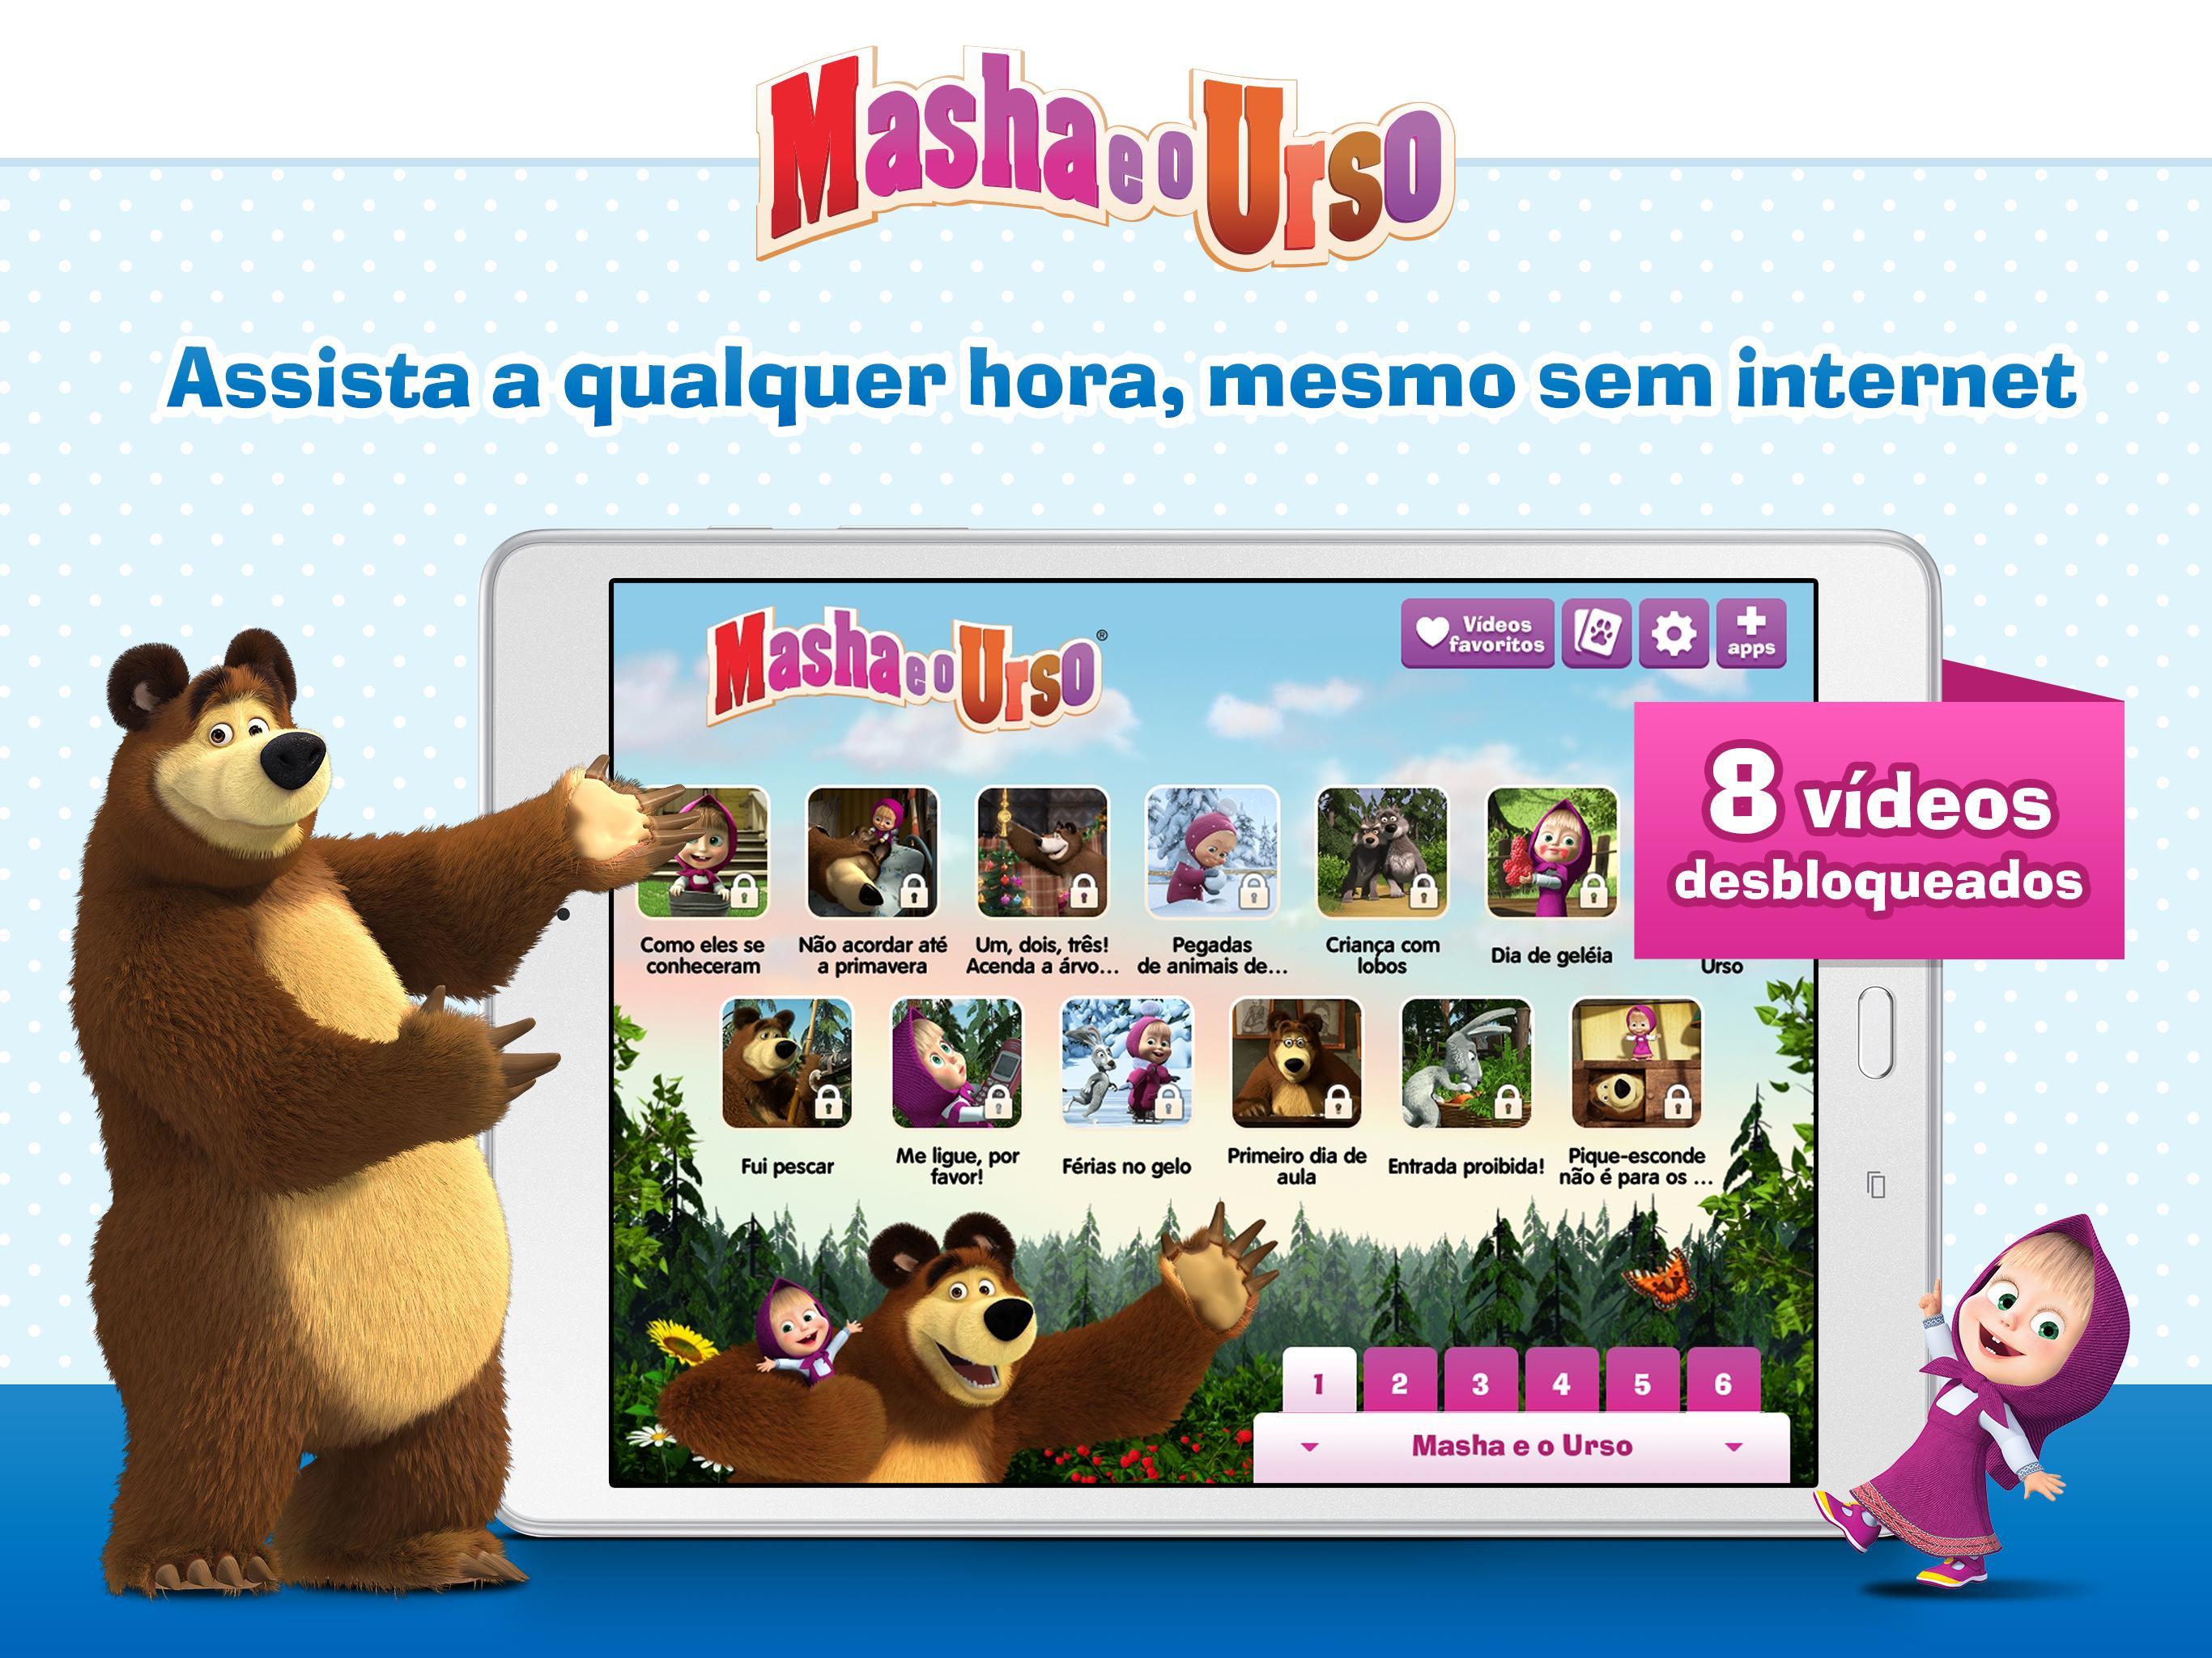 Masha up. Masha e o Urso. Masha and the Bear in English. Masha e o Urso logo. Маша и медведь шрифт.